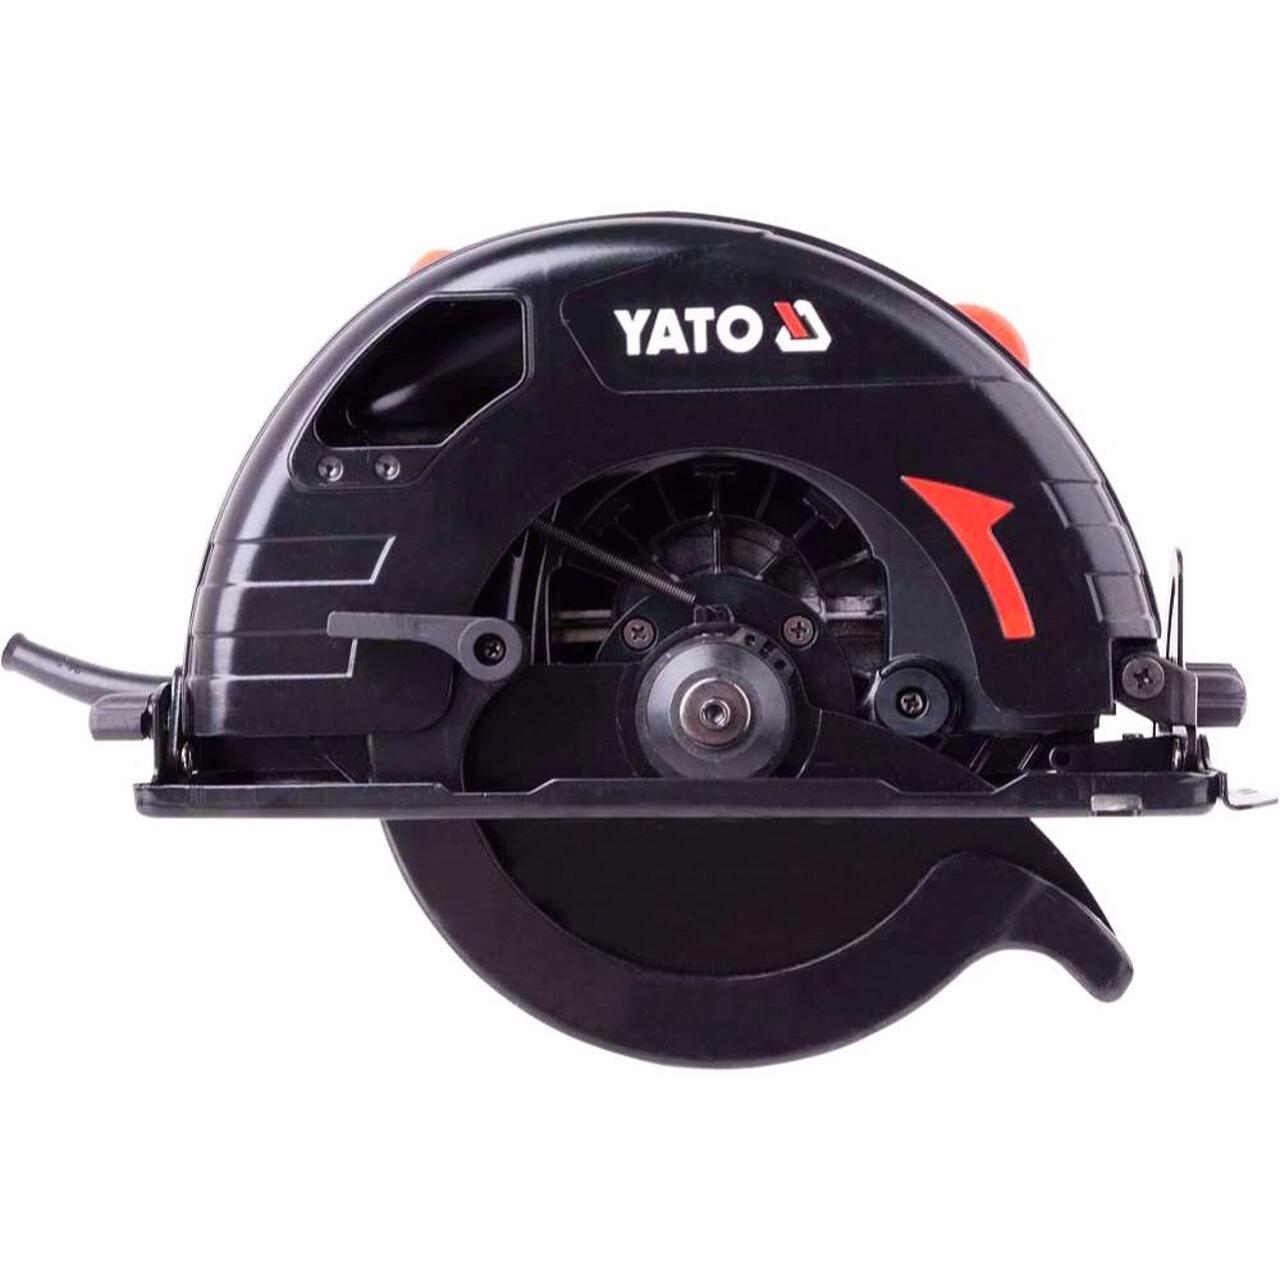 Ръчен циркуляр YATO YT 82150, диск 190 мм, 1300 W